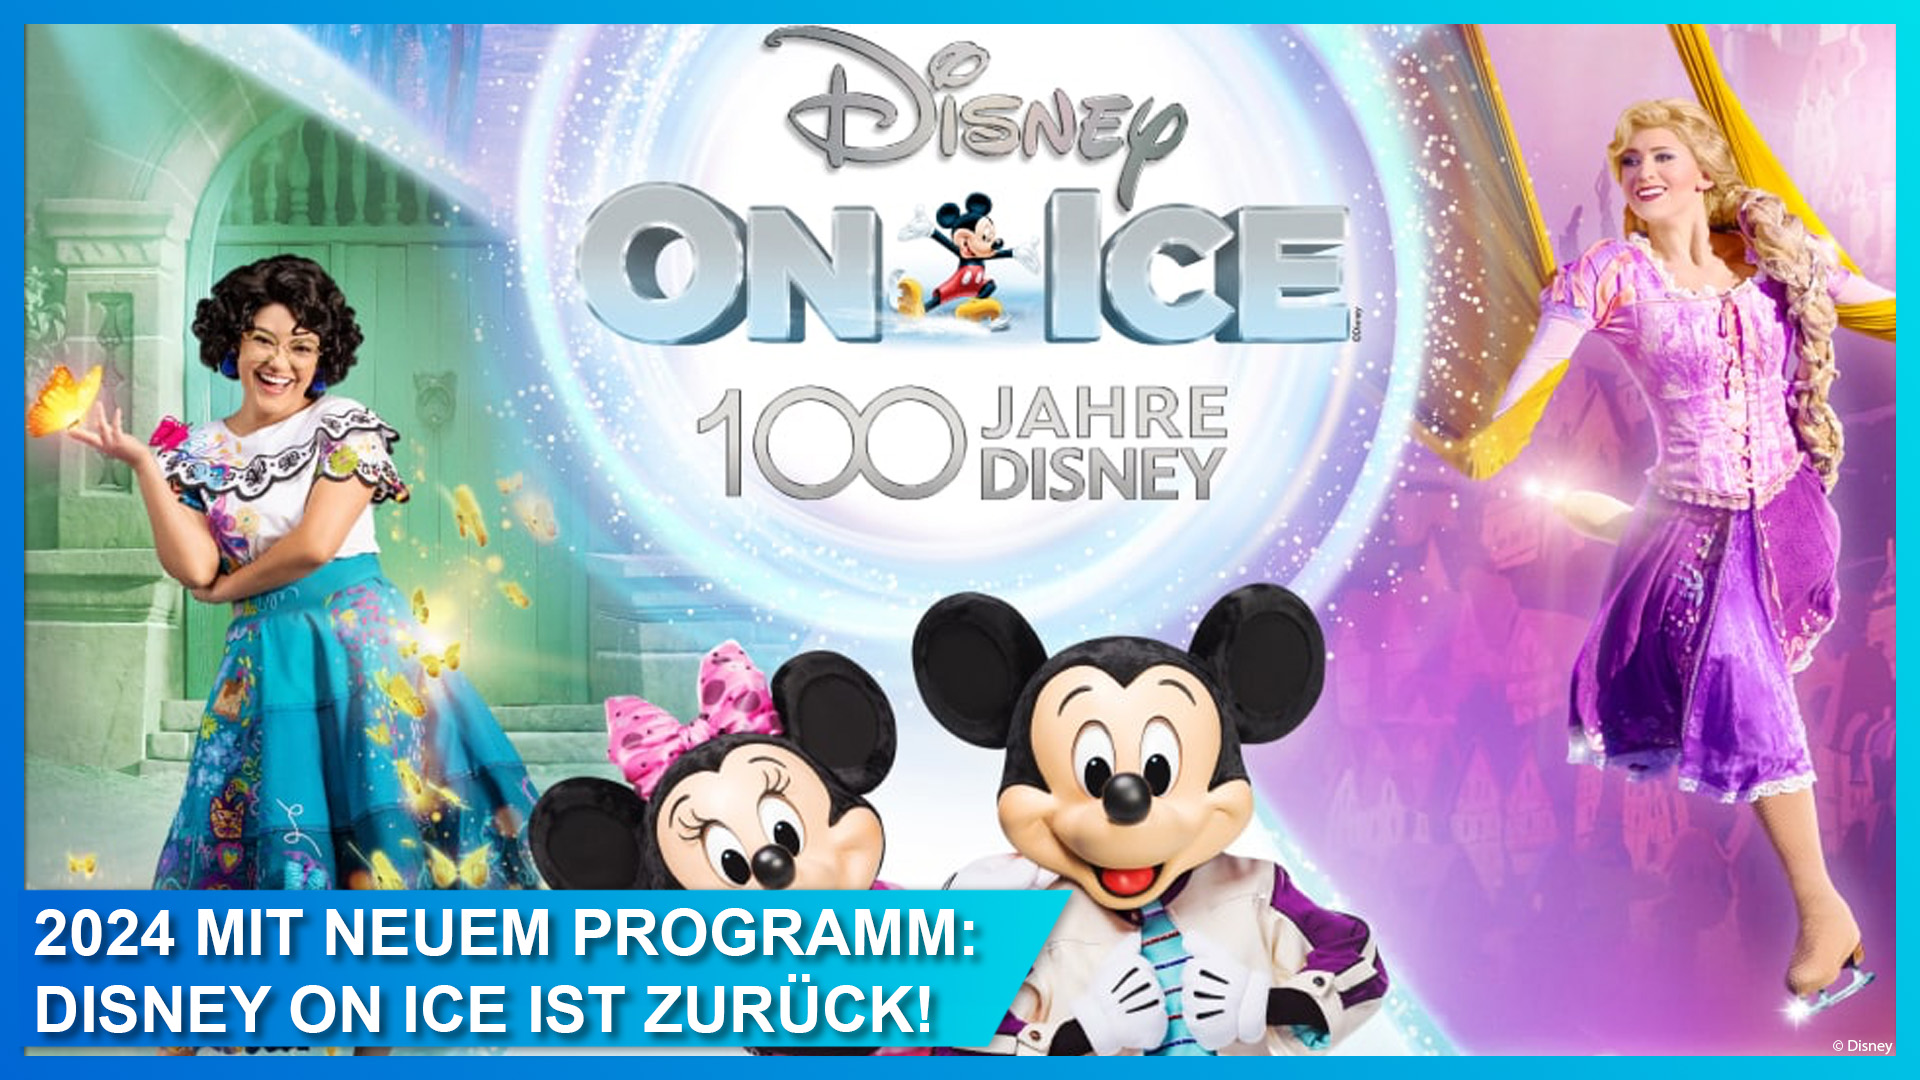 Disney on Ice 100 Jahre Disney im März 2024 in Berlin, München